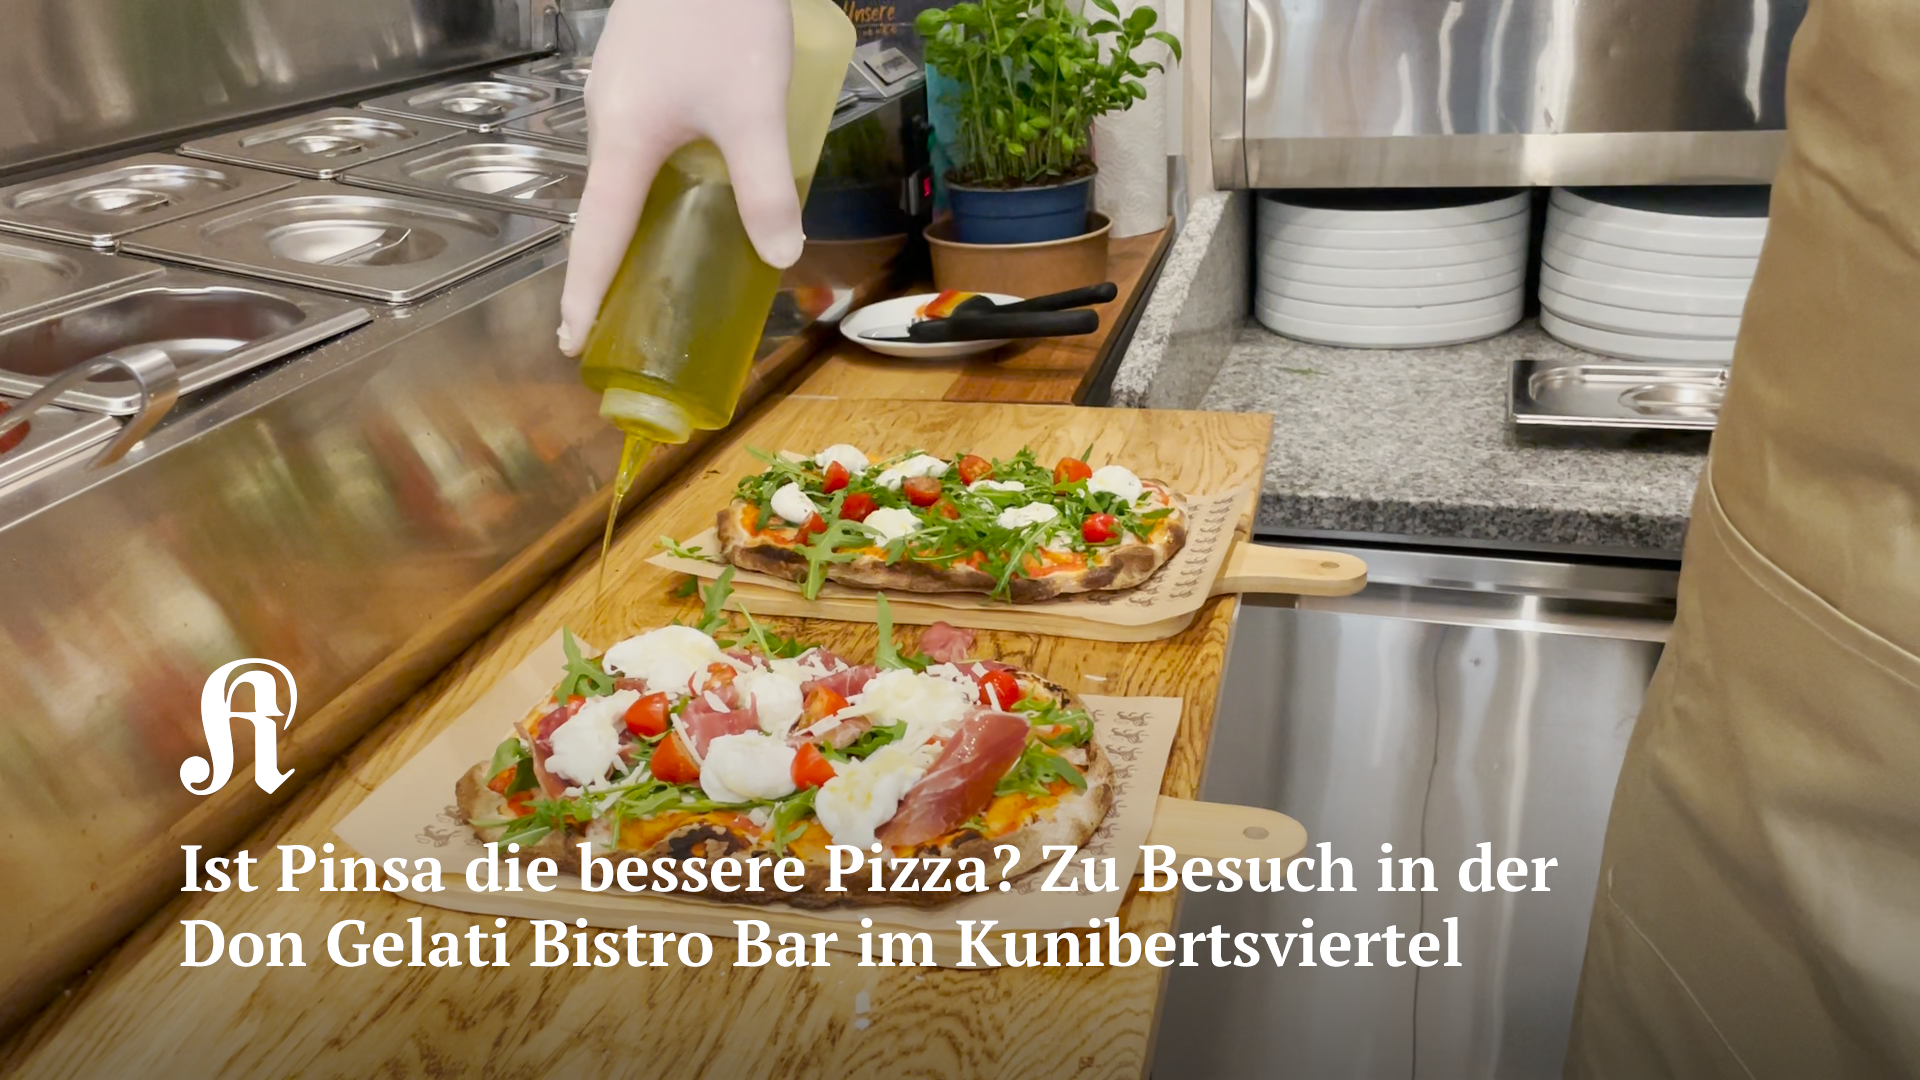 Ist Pinsa die bessere Pizza? Zu Besuch in der Don Gelati Bistro Bar im Kölner Kunibertsviertel